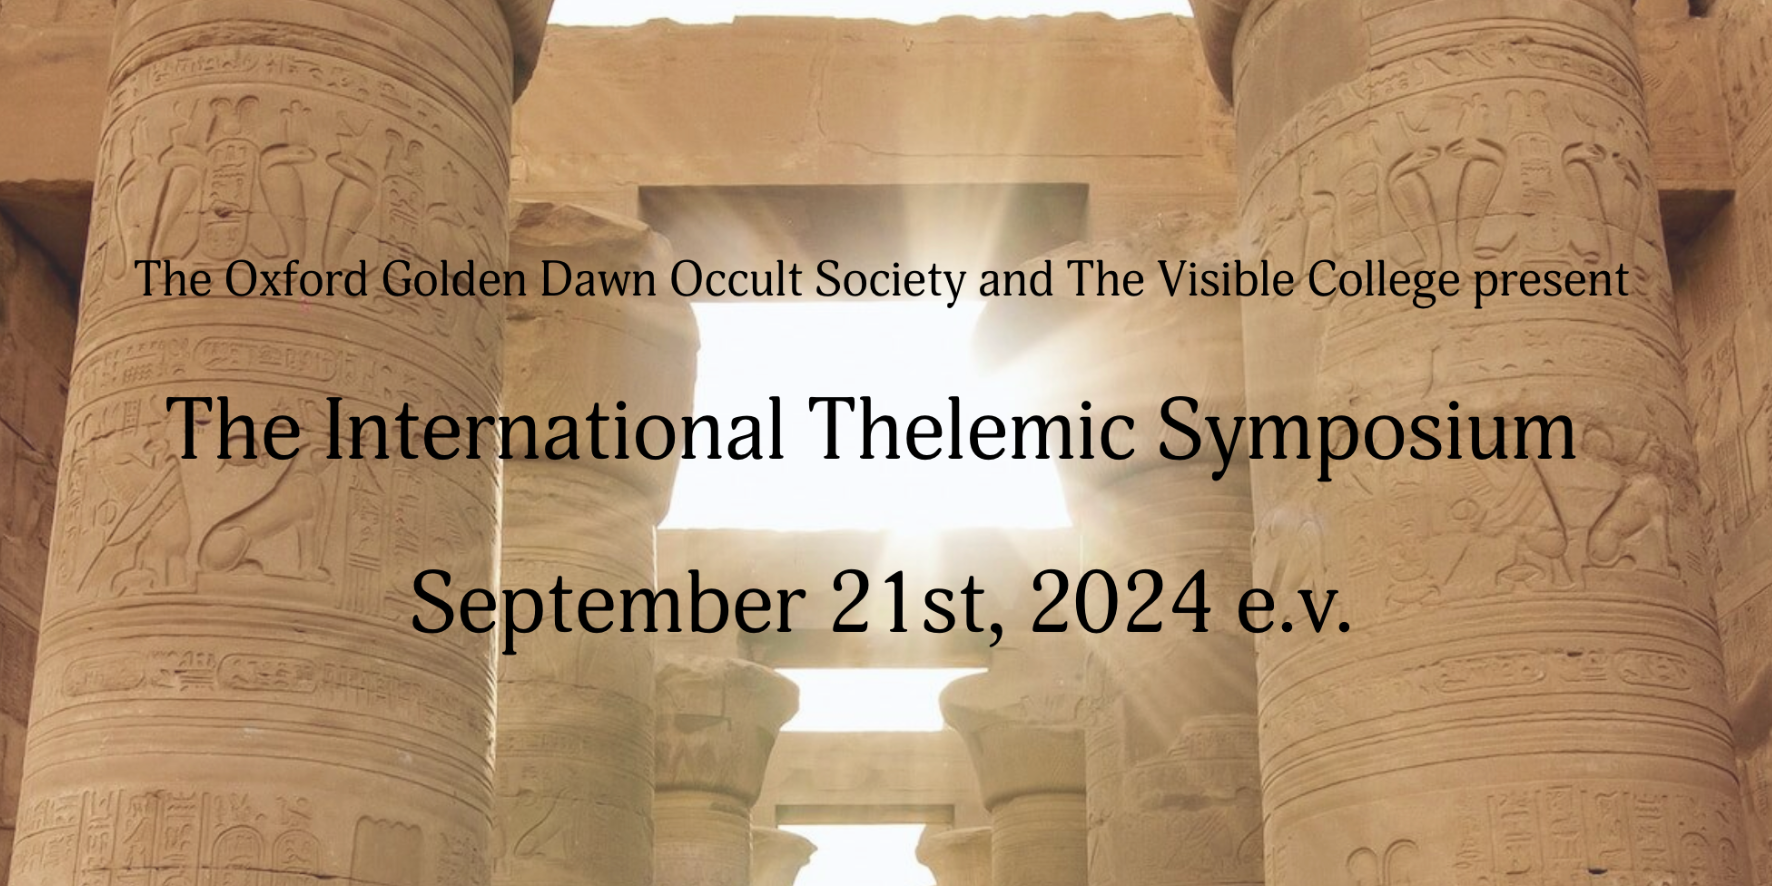 The International Thelemic Symposium